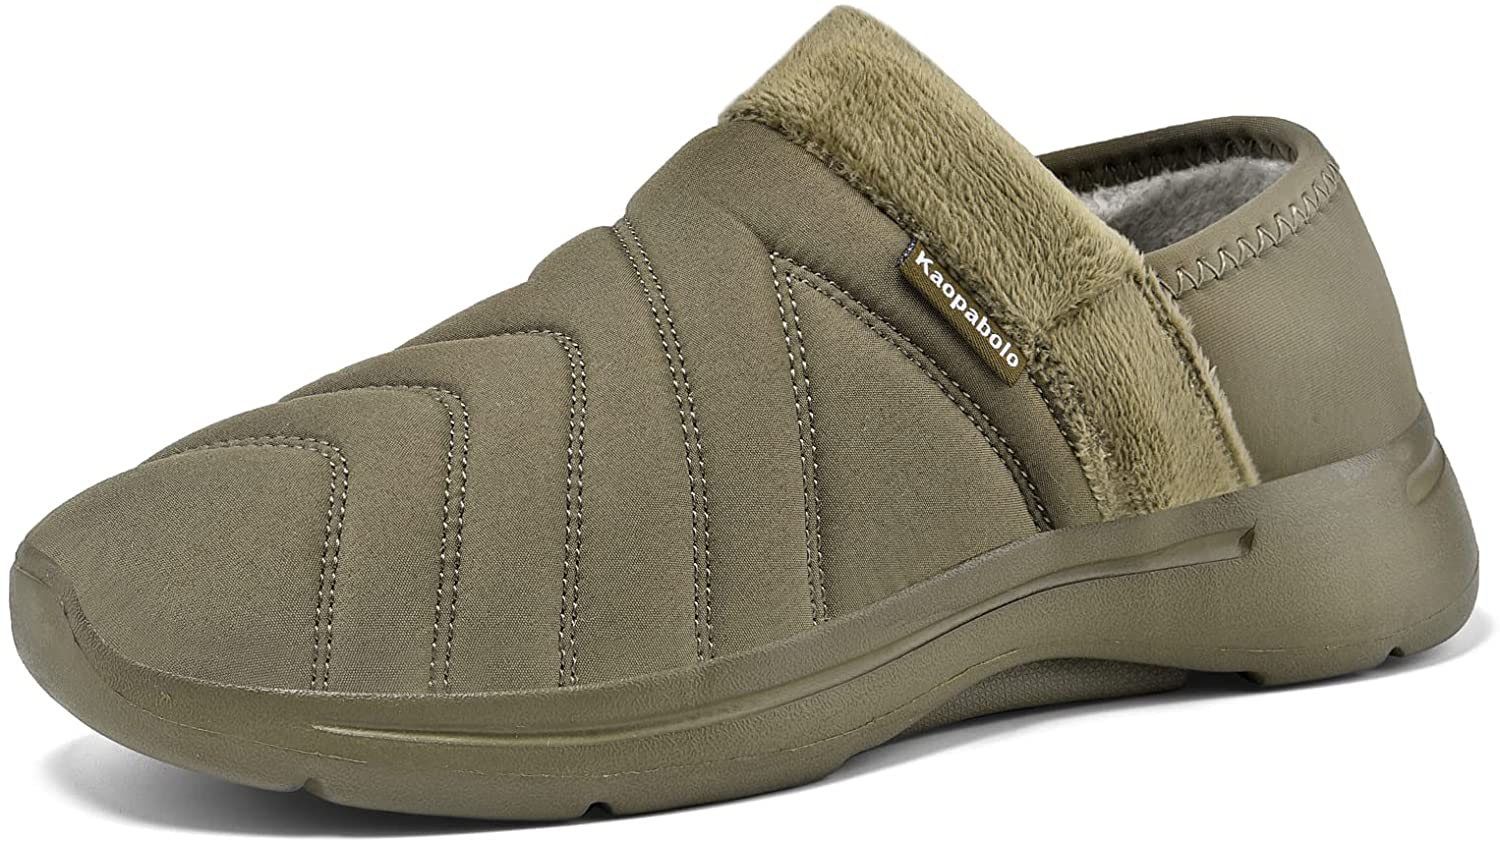 Kaopabolo House Slippers Shoes Comfortable Slip-on for Women Men | eBay